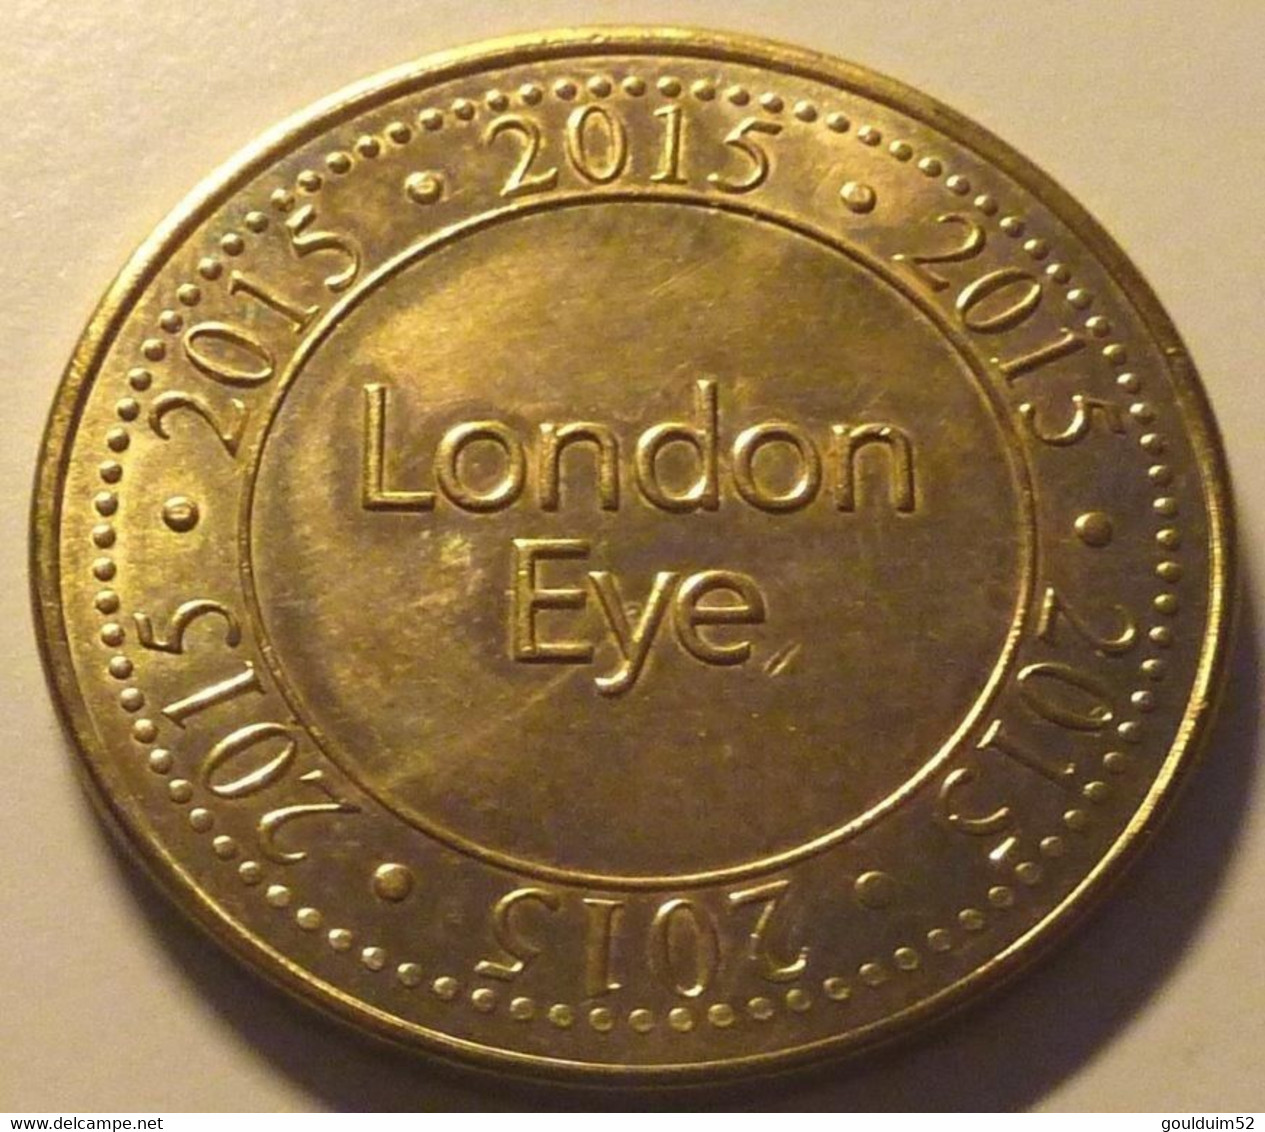 London : Eye - Firma's